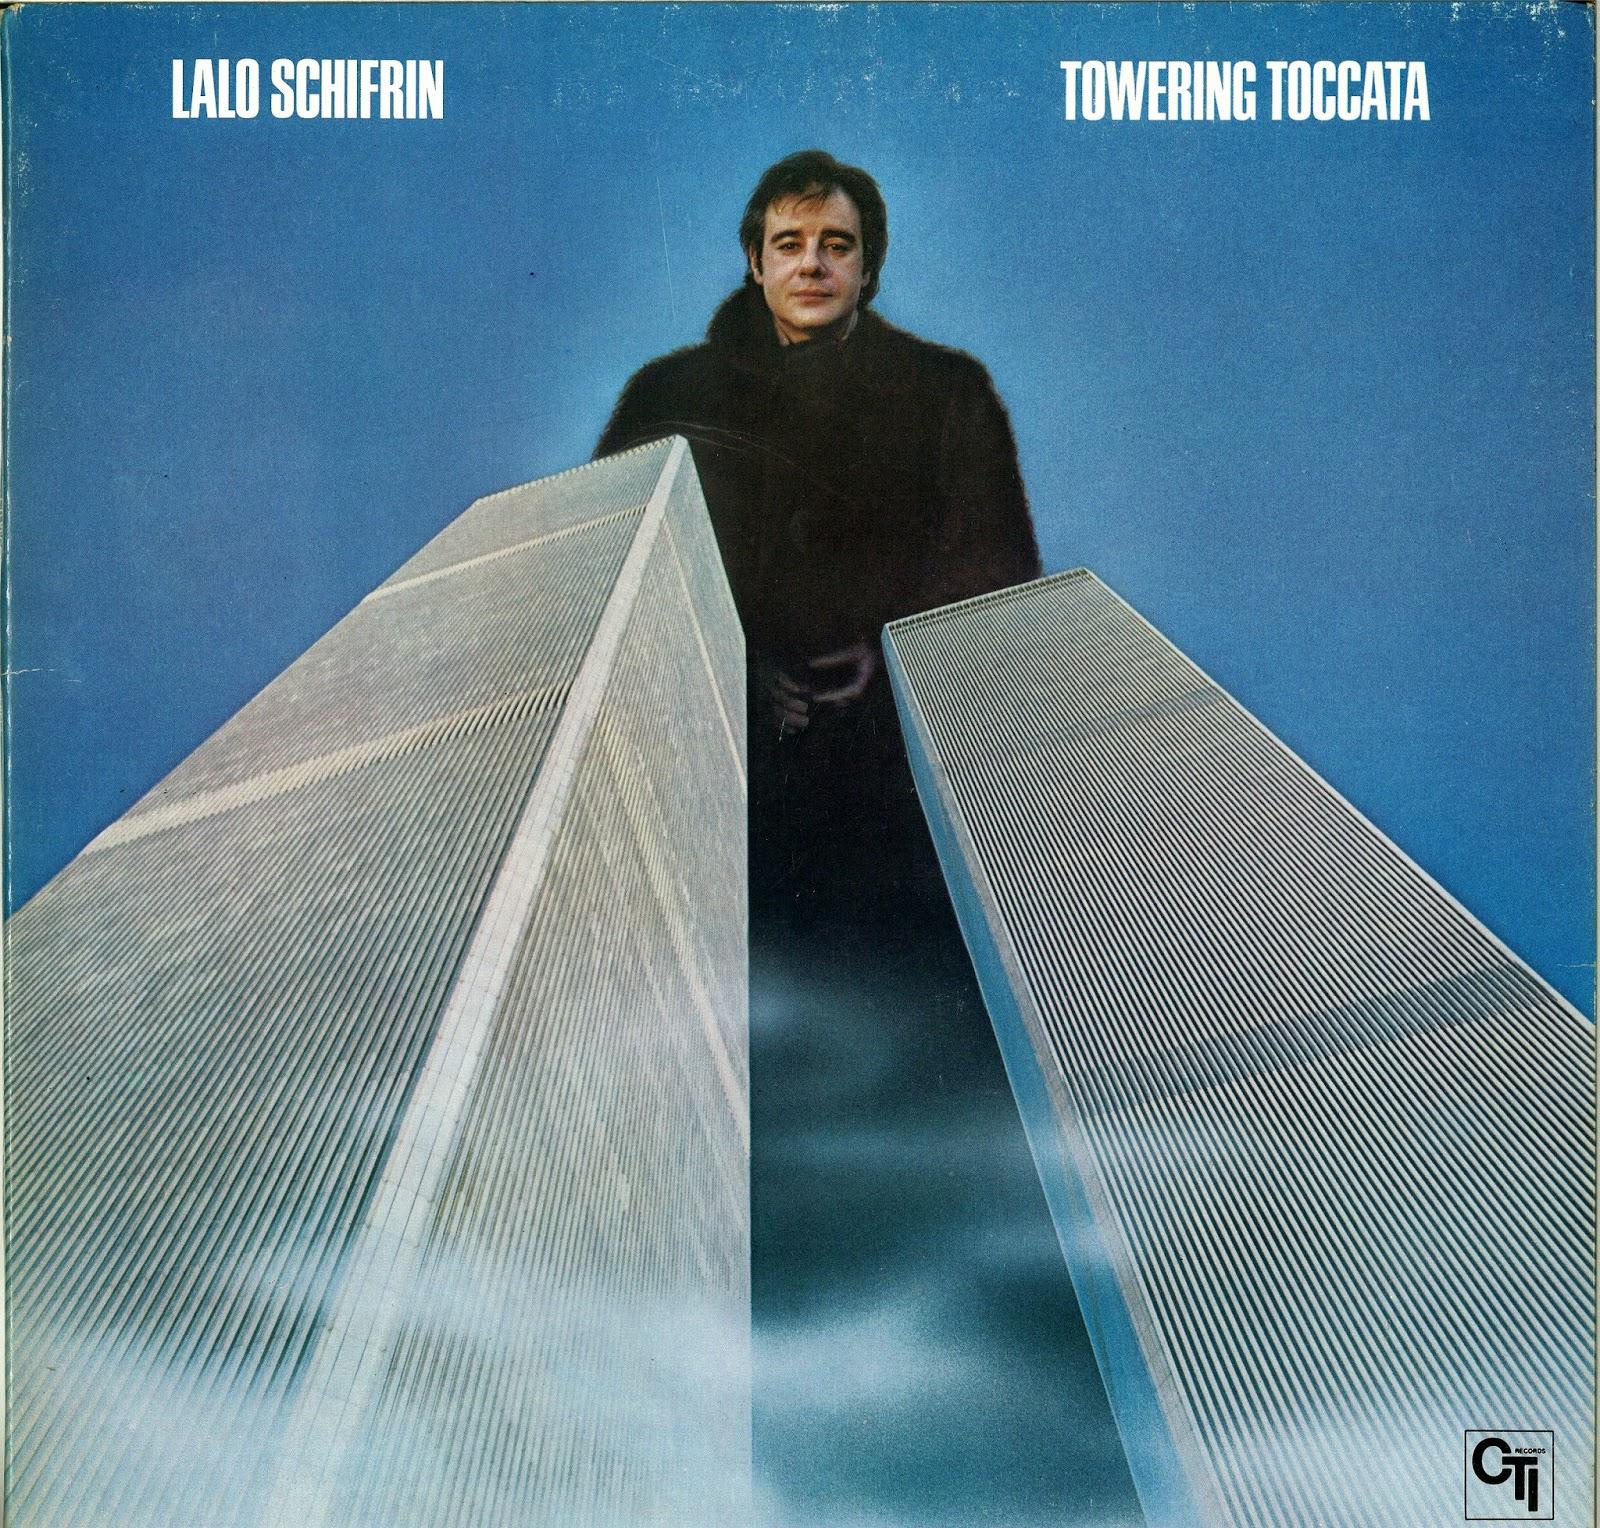 La pochette de l'album "Towering Toccata" de Lalo Schirfin.